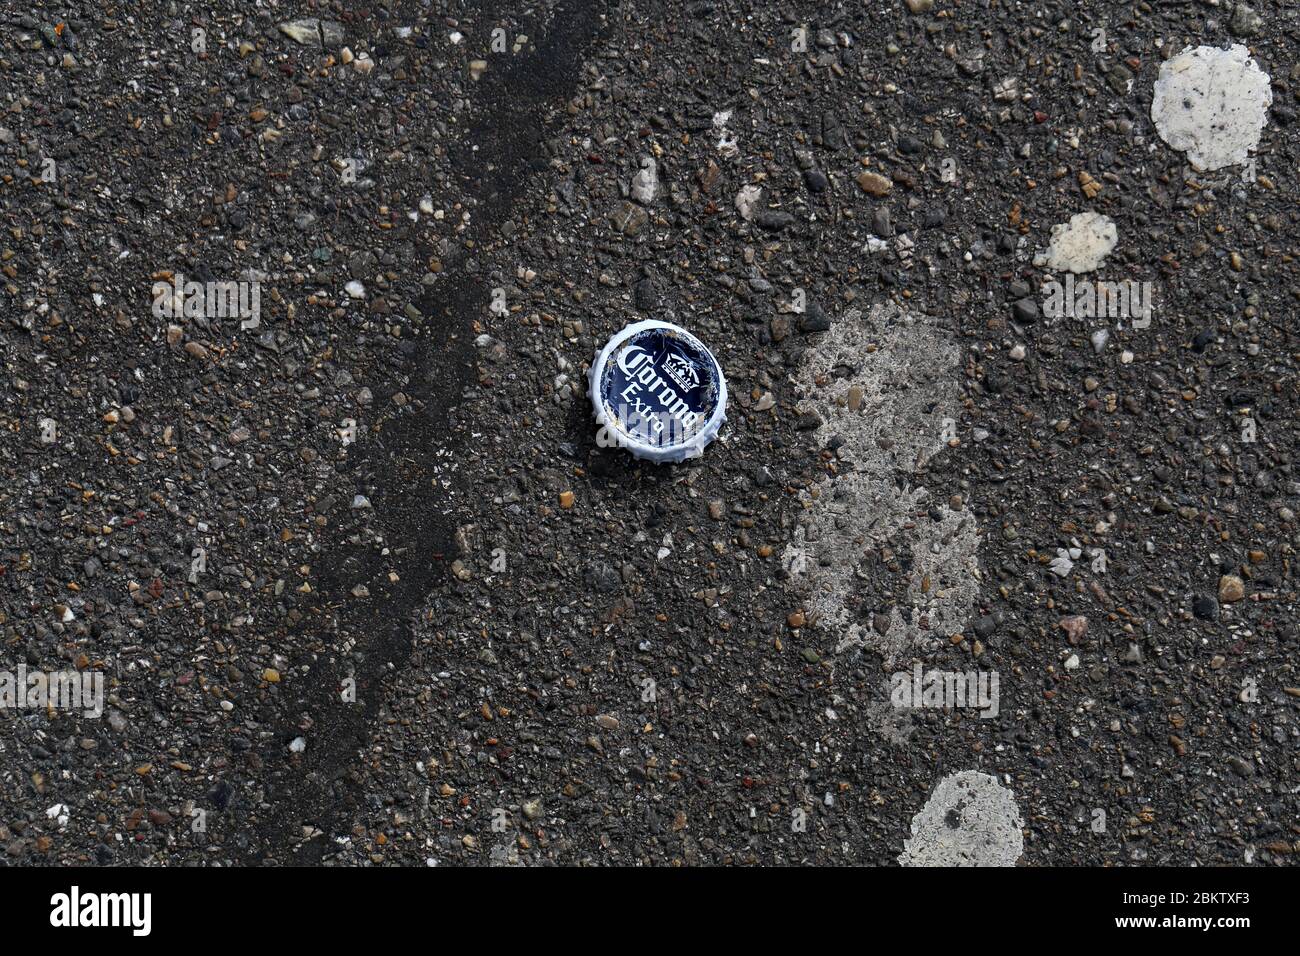 Tapa de botella de cerveza Corona en una carretera asfaltada, Zúrich, Suiza, marzo de 2020. Fotografiado desde arriba. Foto de stock